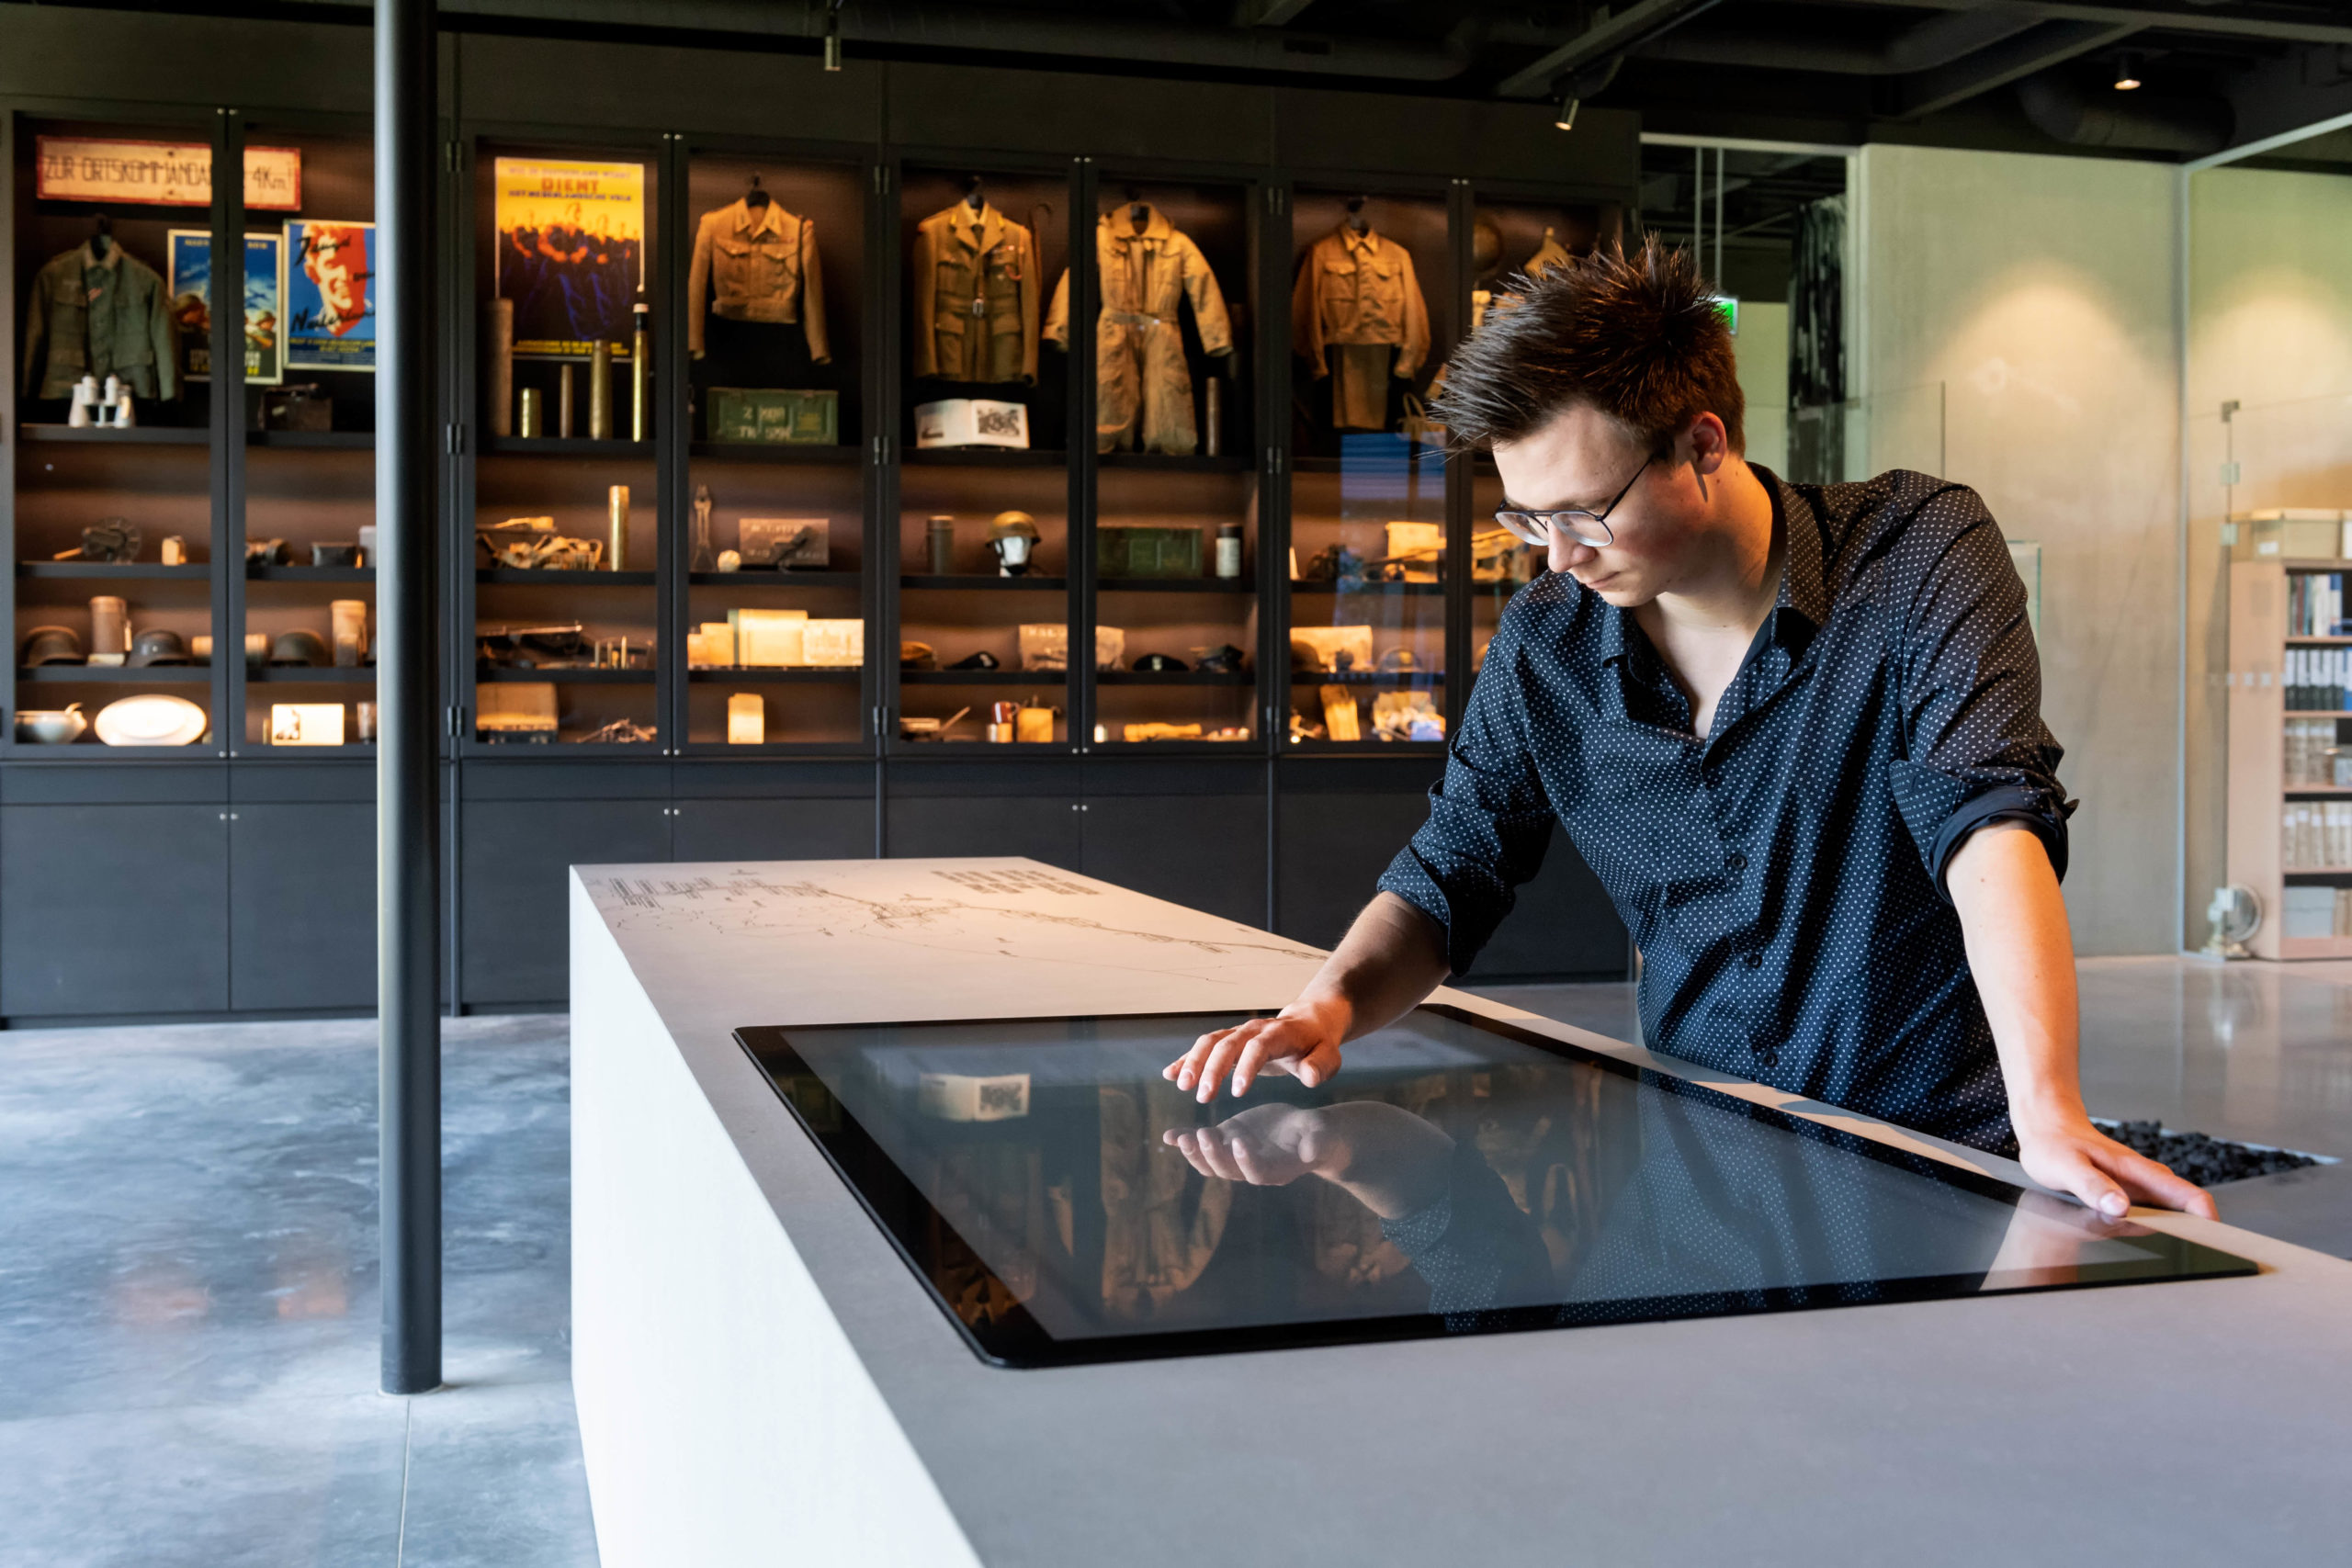 Een bezoeker in een museum kijkt neer op een groot scherm dat in een soort witte tafel bevestigd is.